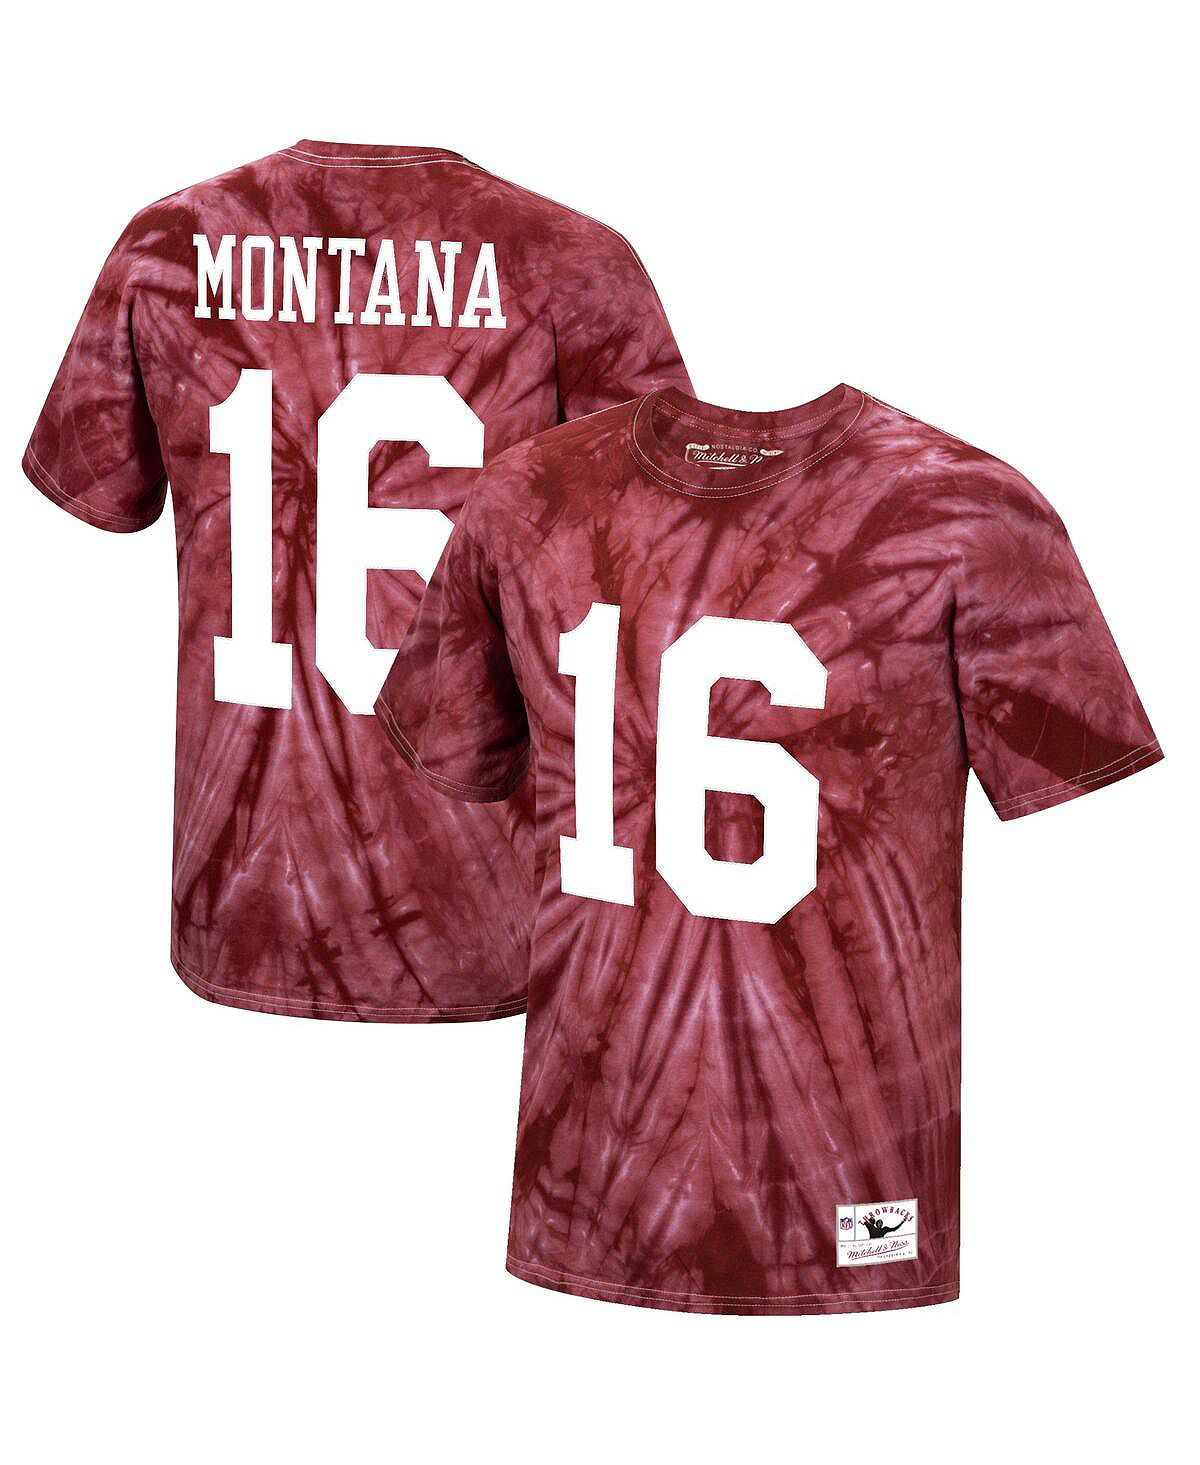 Мужская футболка joe montana scarlet san francisco 49ers tie-dye с именем и номером игрока на пенсии Mitchell & Ness